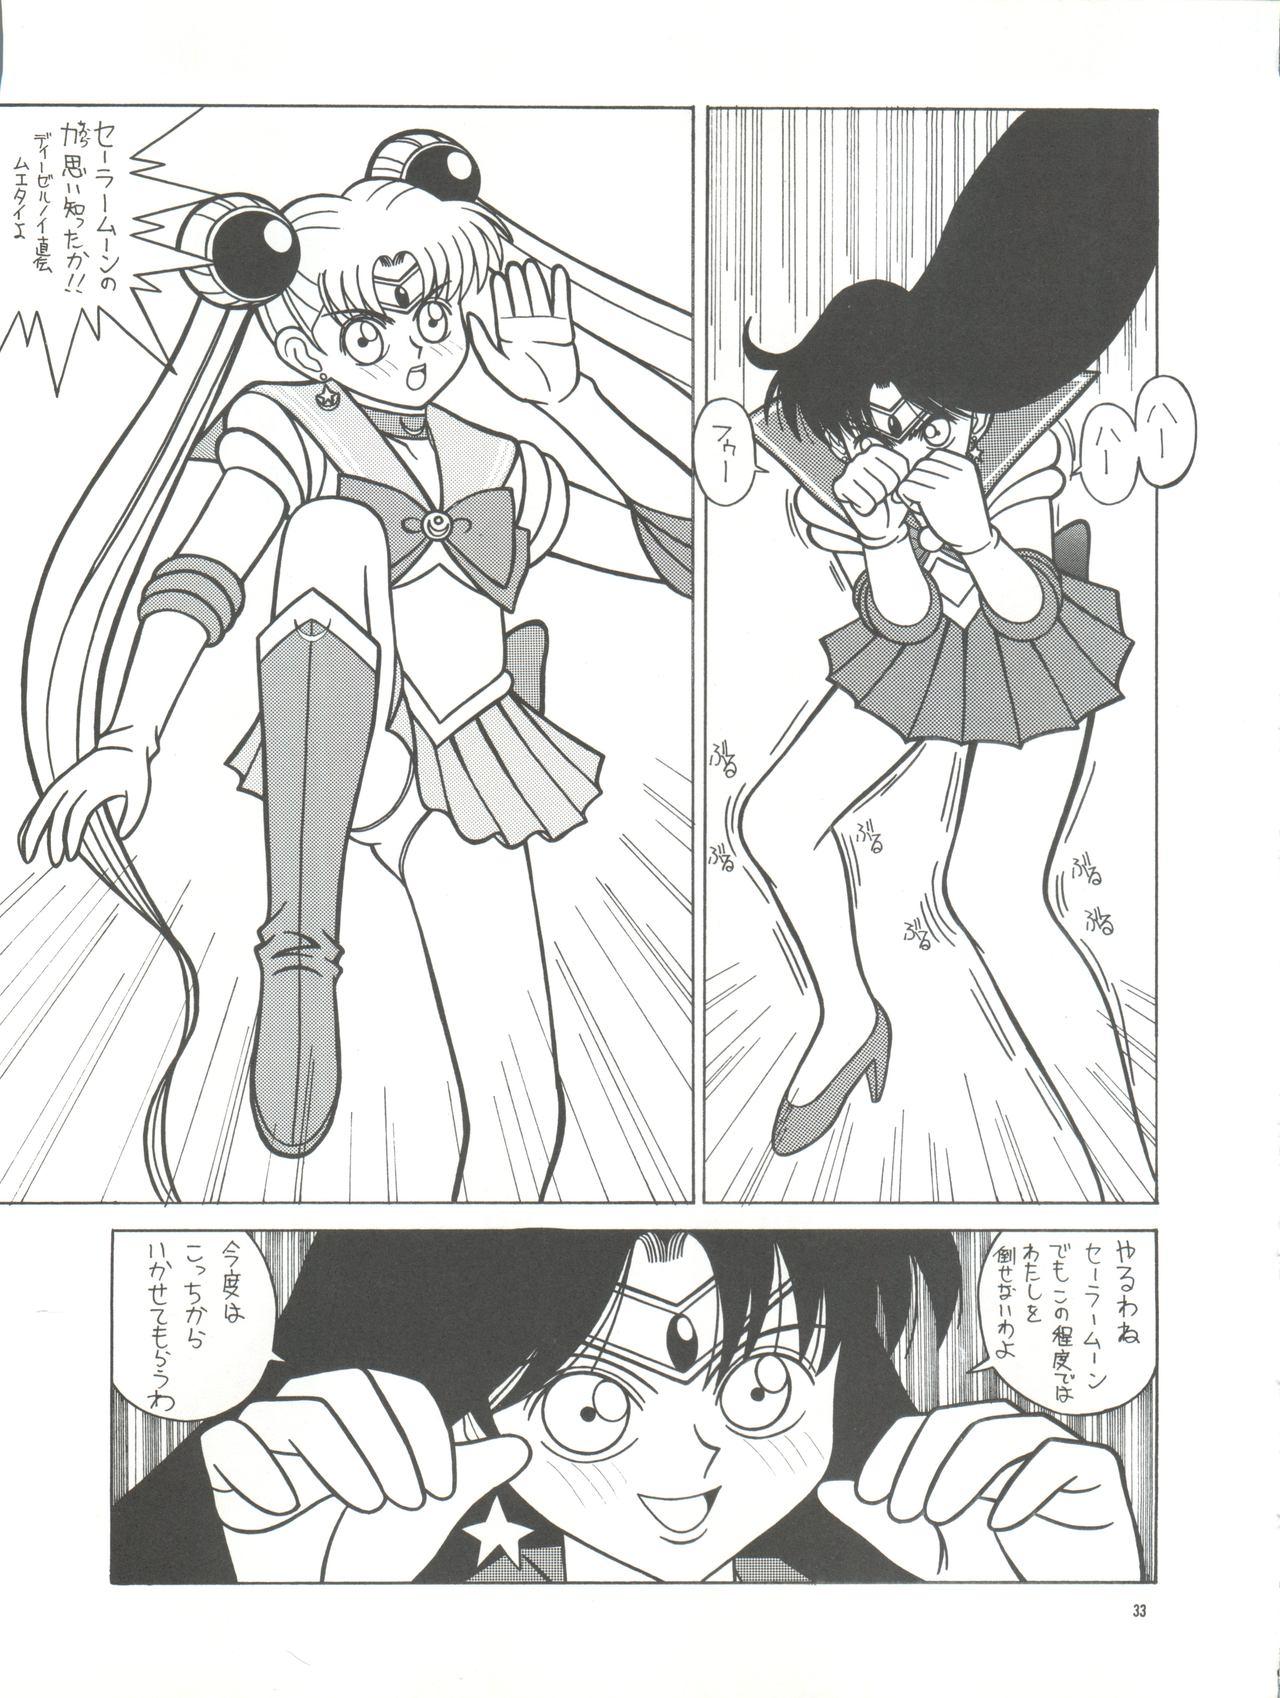 PUSSY CAT Vol. 26 Sailor Moon 3 32